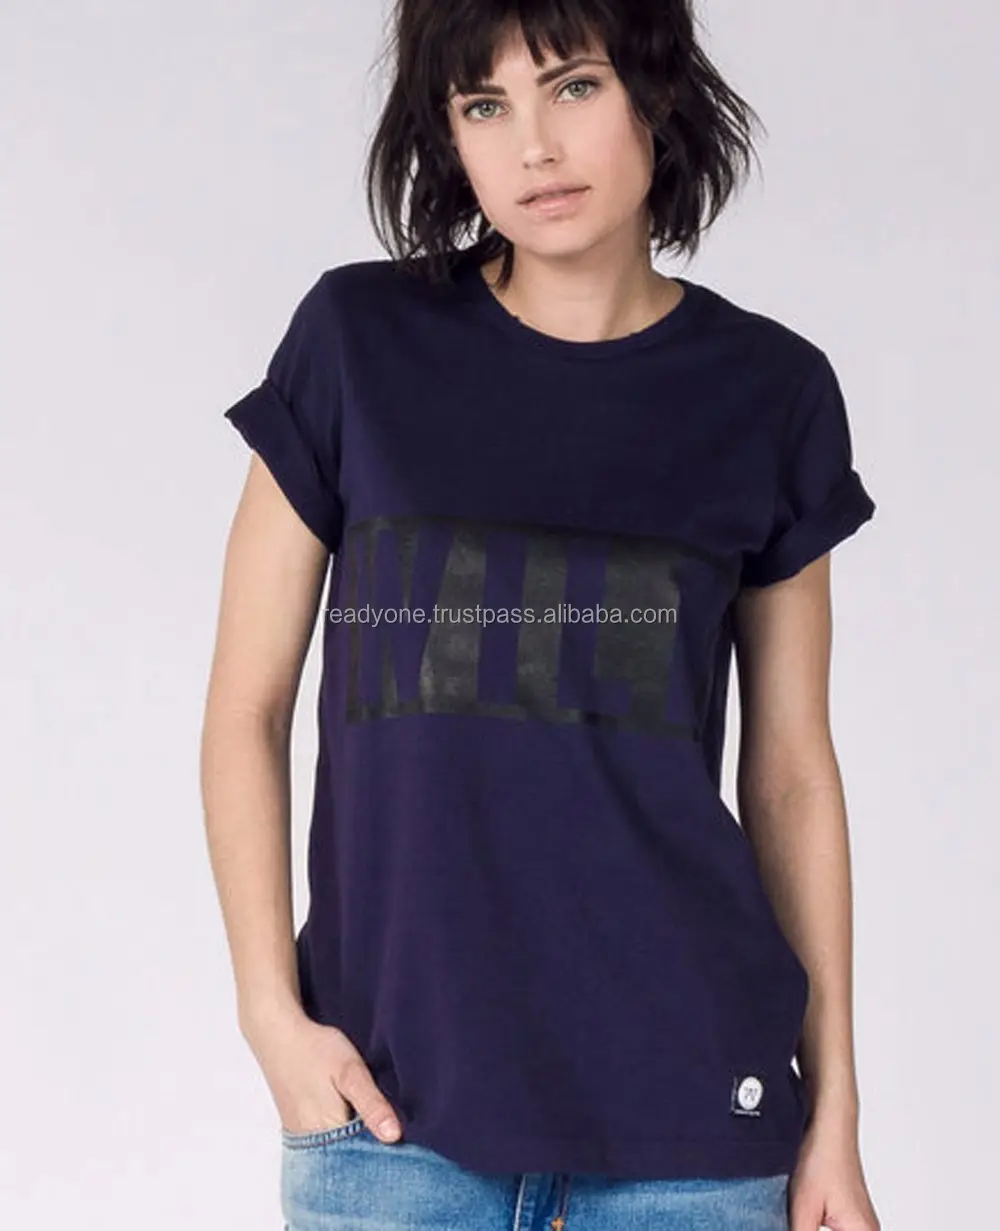 태국에서 95% cotton 5% elastane 두 컬러 티셔츠 여성 패션 의류 도매